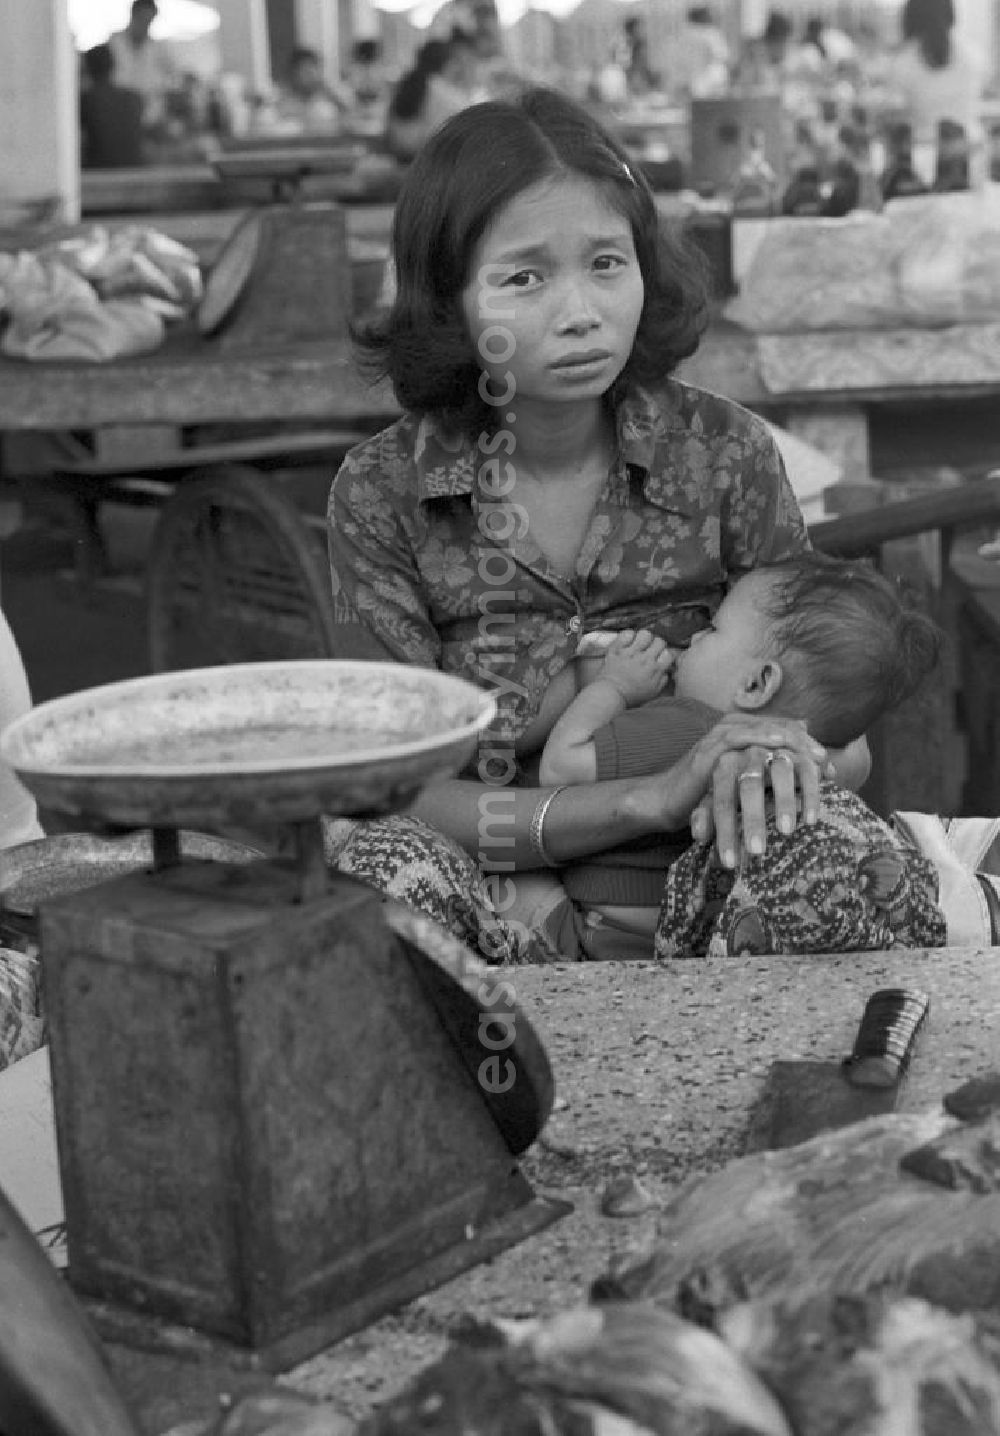 GDR picture archive: Vientiane - Marktszene in Vientiane, der Hauptstadt der Demokratischen Volksrepublik Laos - eine Frau am Verkaufsstand beim Stillen ihres Babys.